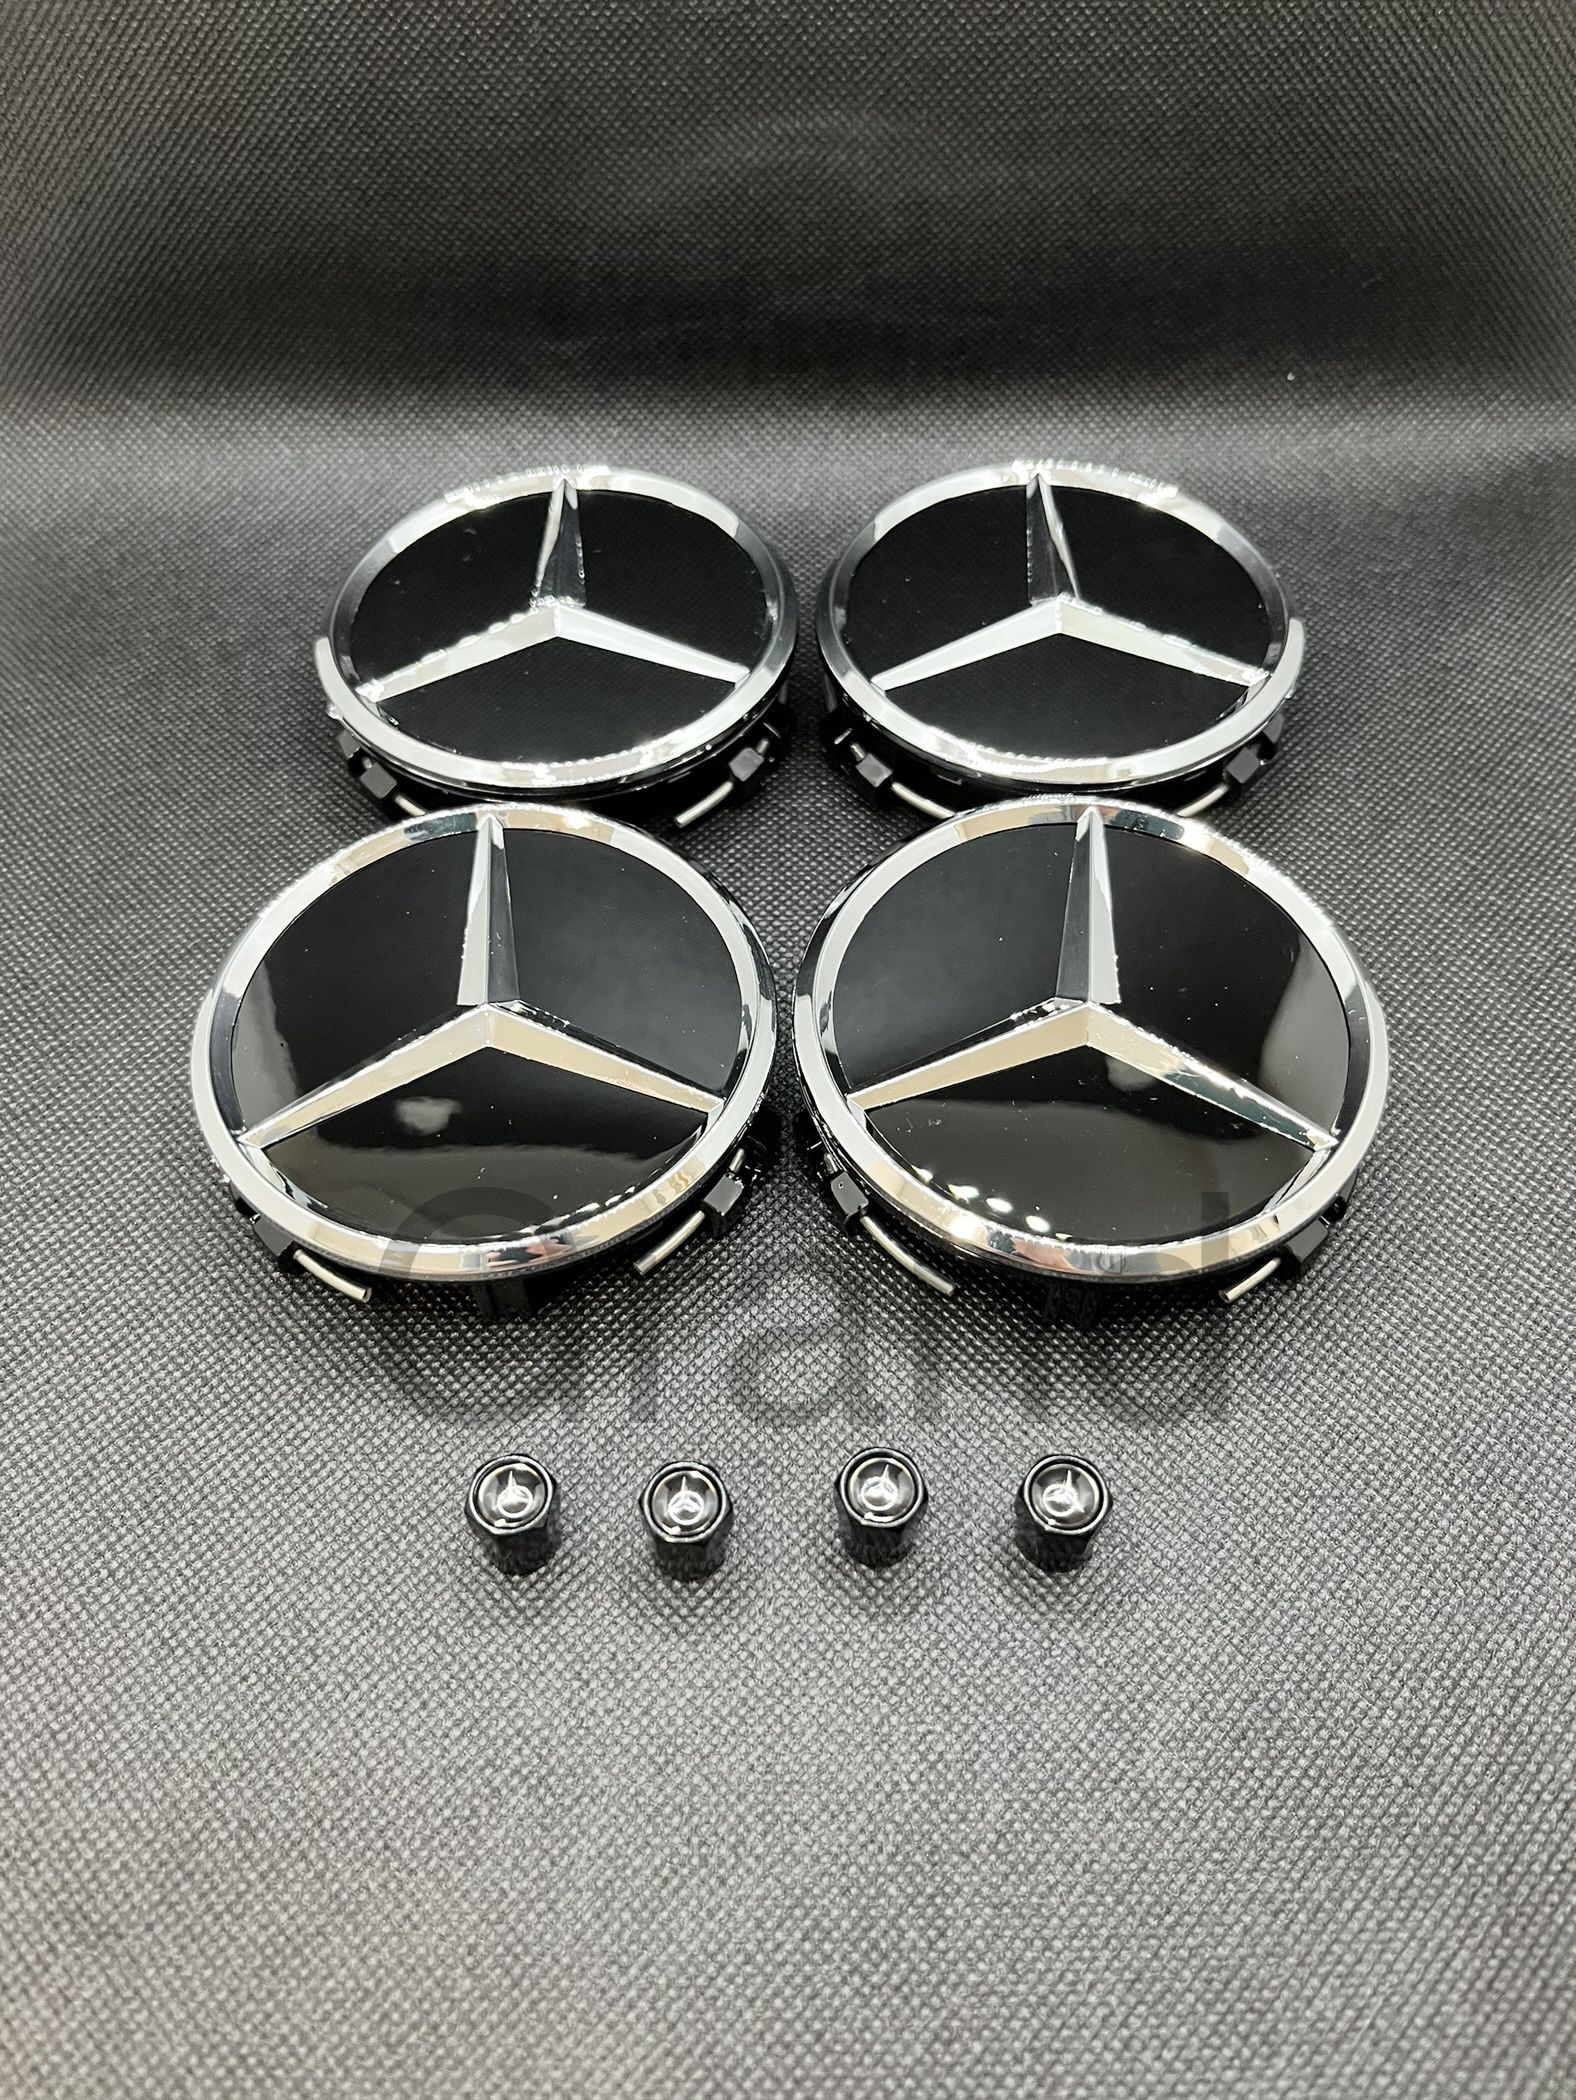 Fits Mercedes Benz Wheel Rim Center Caps And Tire Air Caps  (8 Pieces Set)